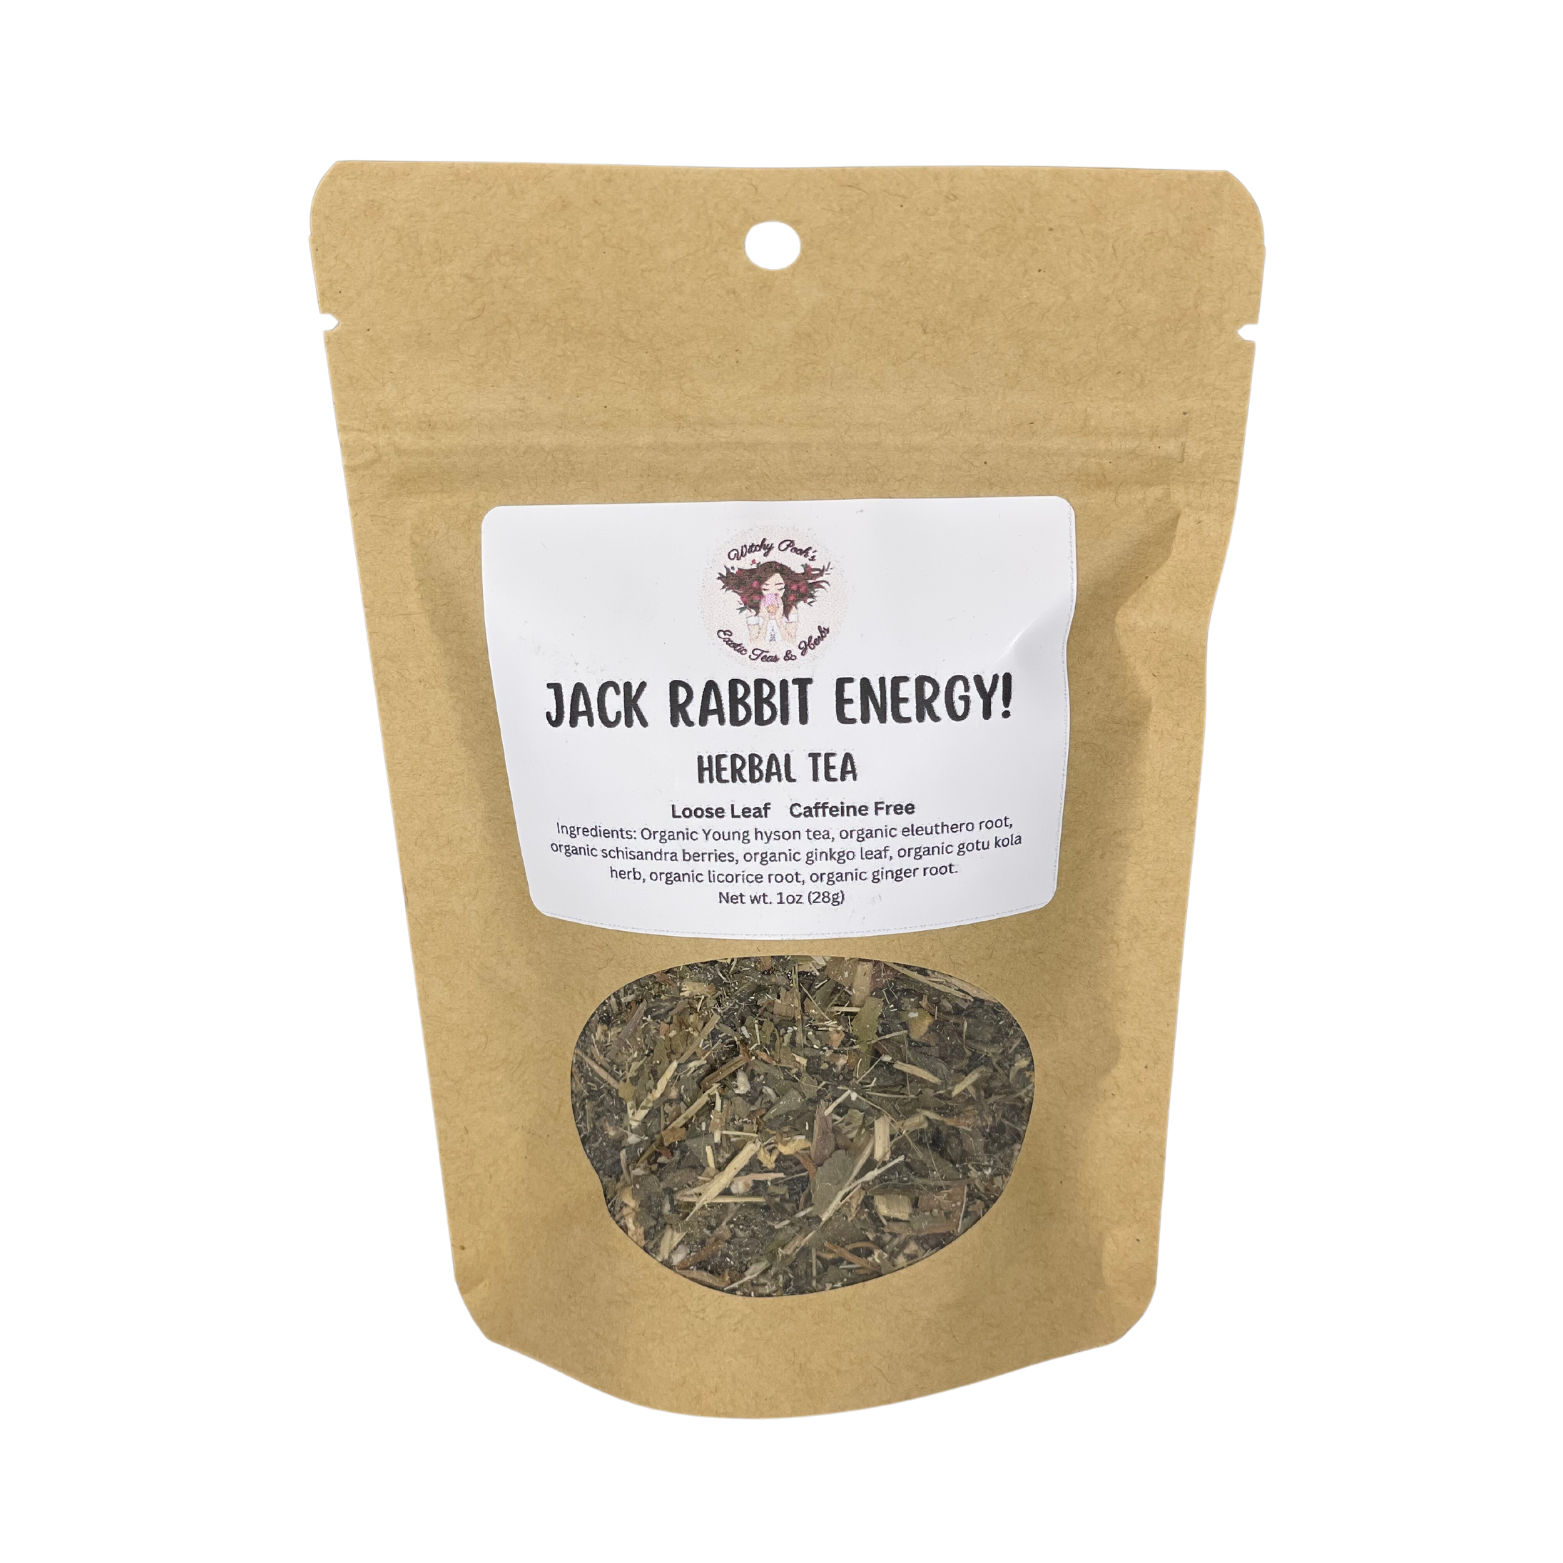 Jack Rabbit Energy! Tea, Herbal Tea, Loose Leaf Tea, Functional Tea, Caffeine Free Tea, Sugar Free Tea-0